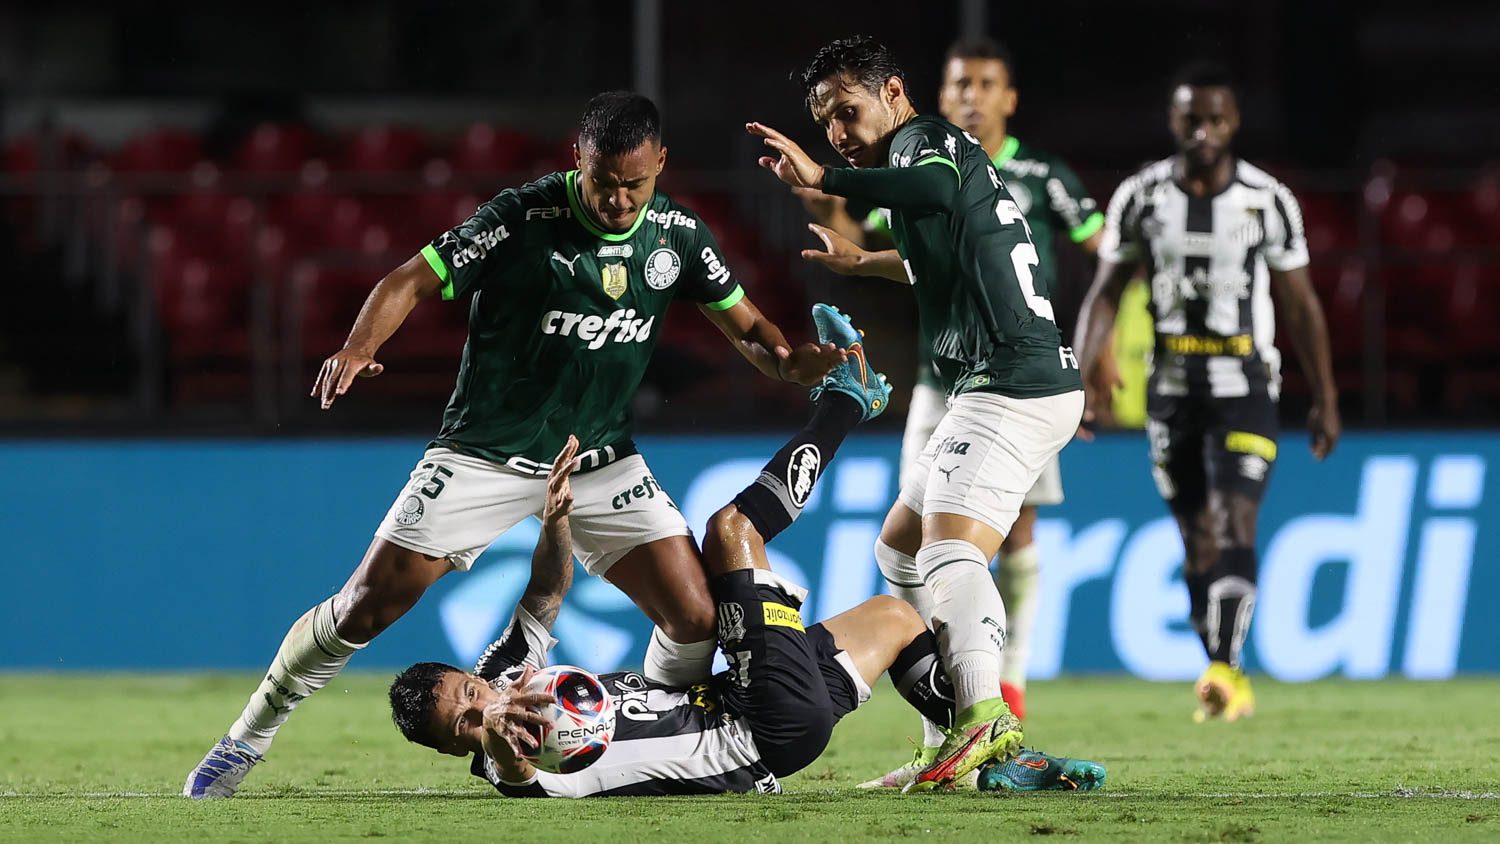 Santos é derrotado pelo Palmeiras e fica com o vice-campeonato do Paulista  Feminino – Santistas